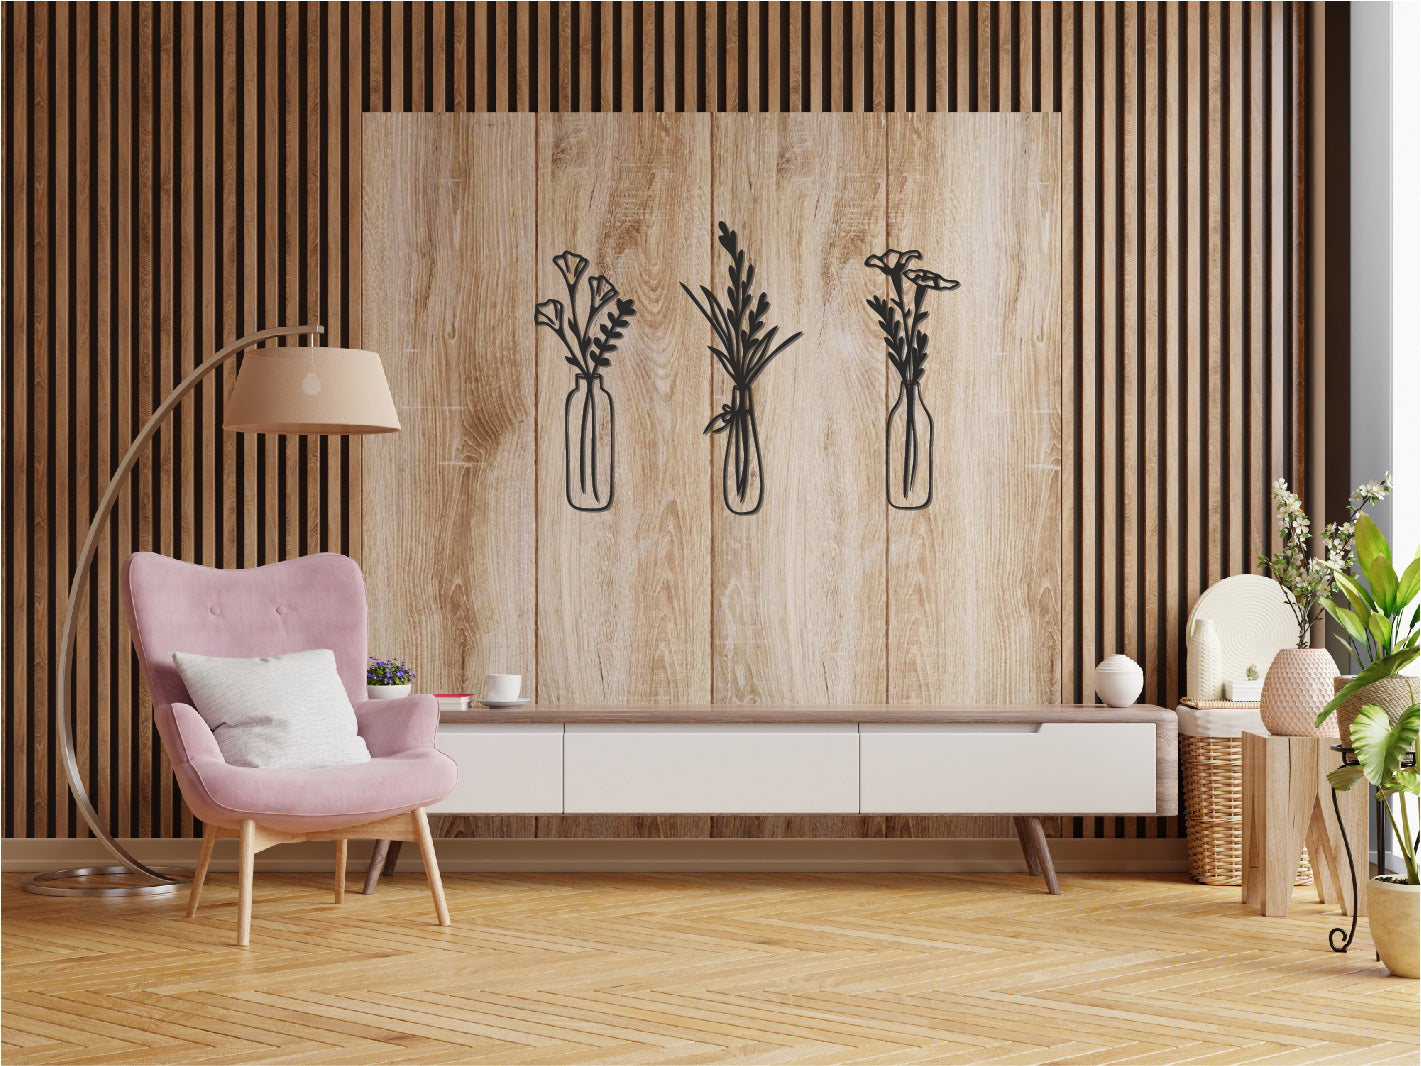 Vase à fleurs en bois/décoration murale/3D/art linéaire/fleurs/décoration murale 3D/vases en bois